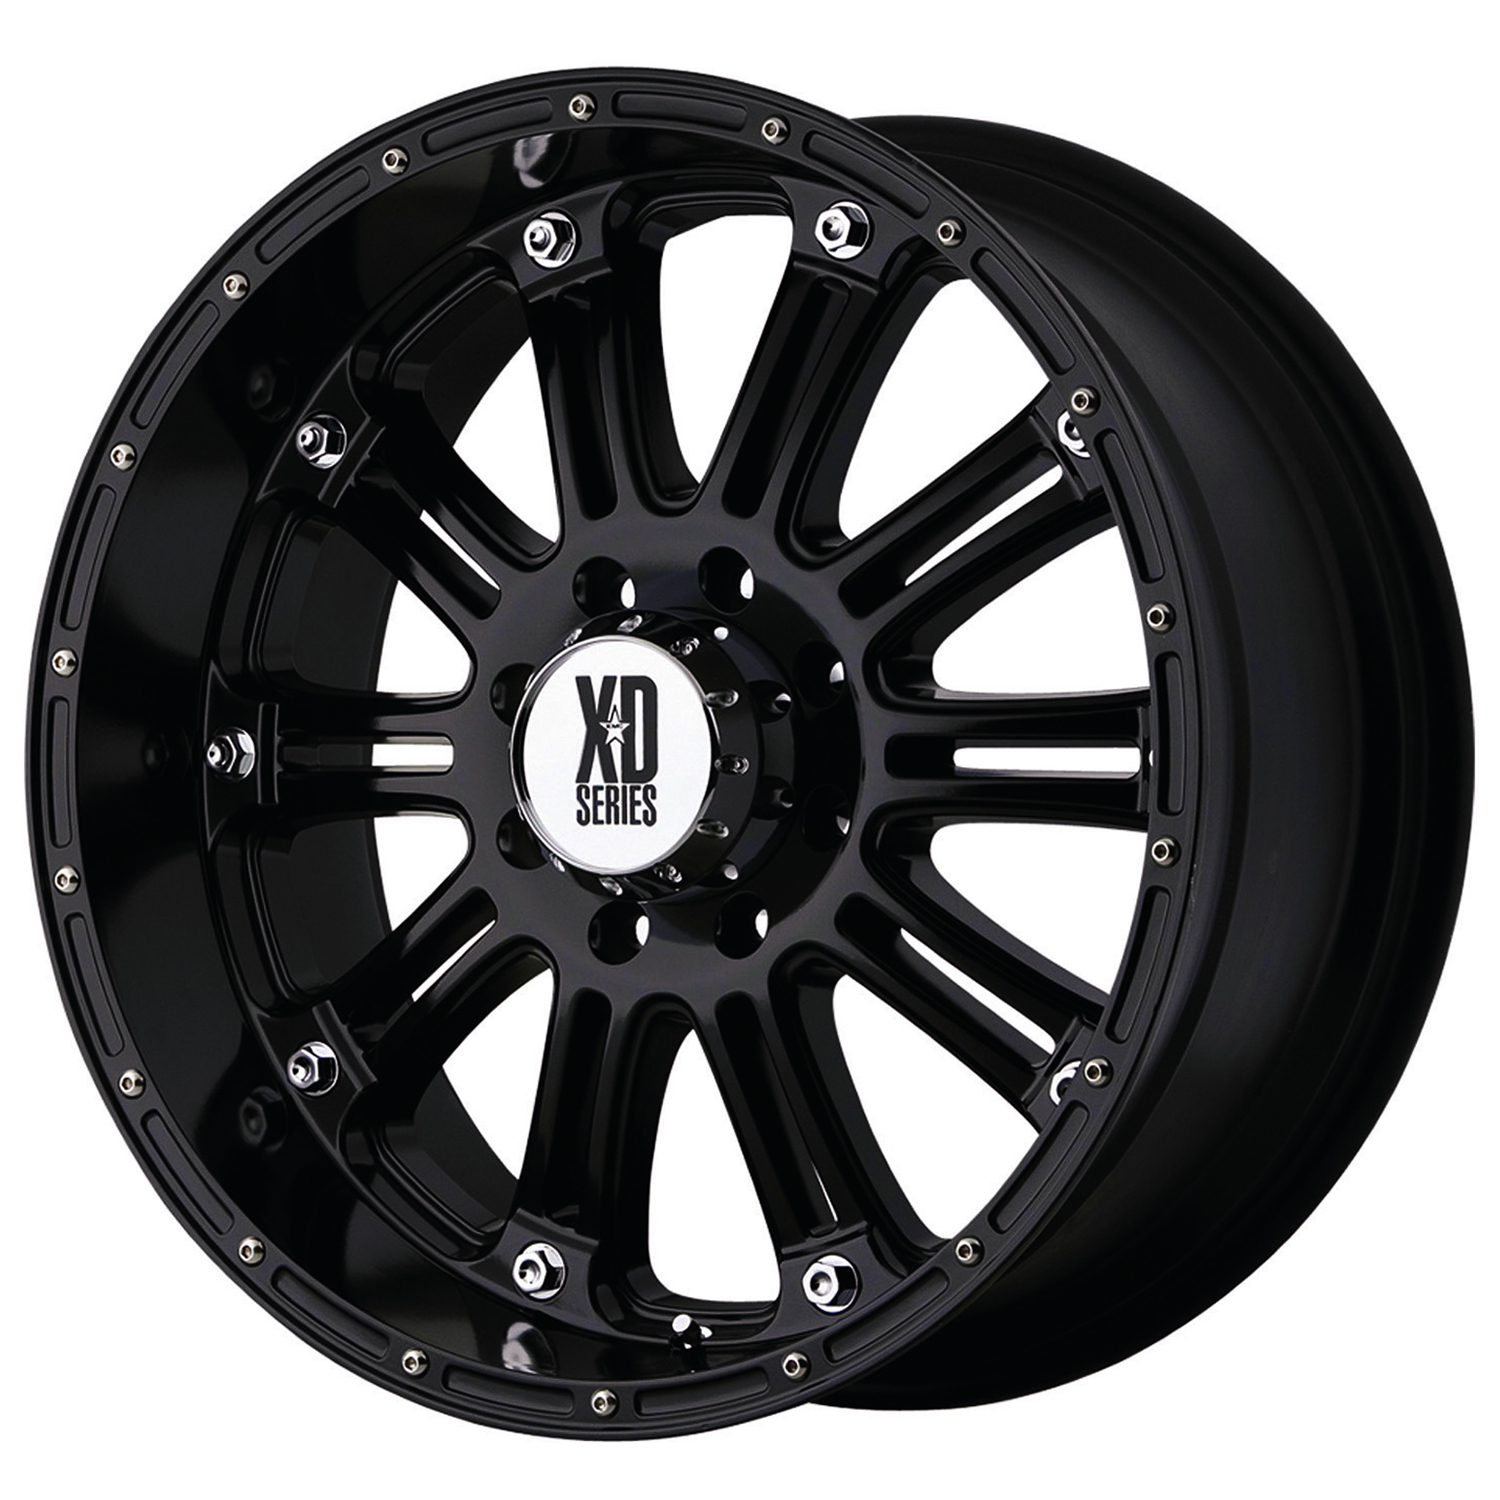 XD Series Hoss 16x8 5x114.3 0et Gloss Black Wheel